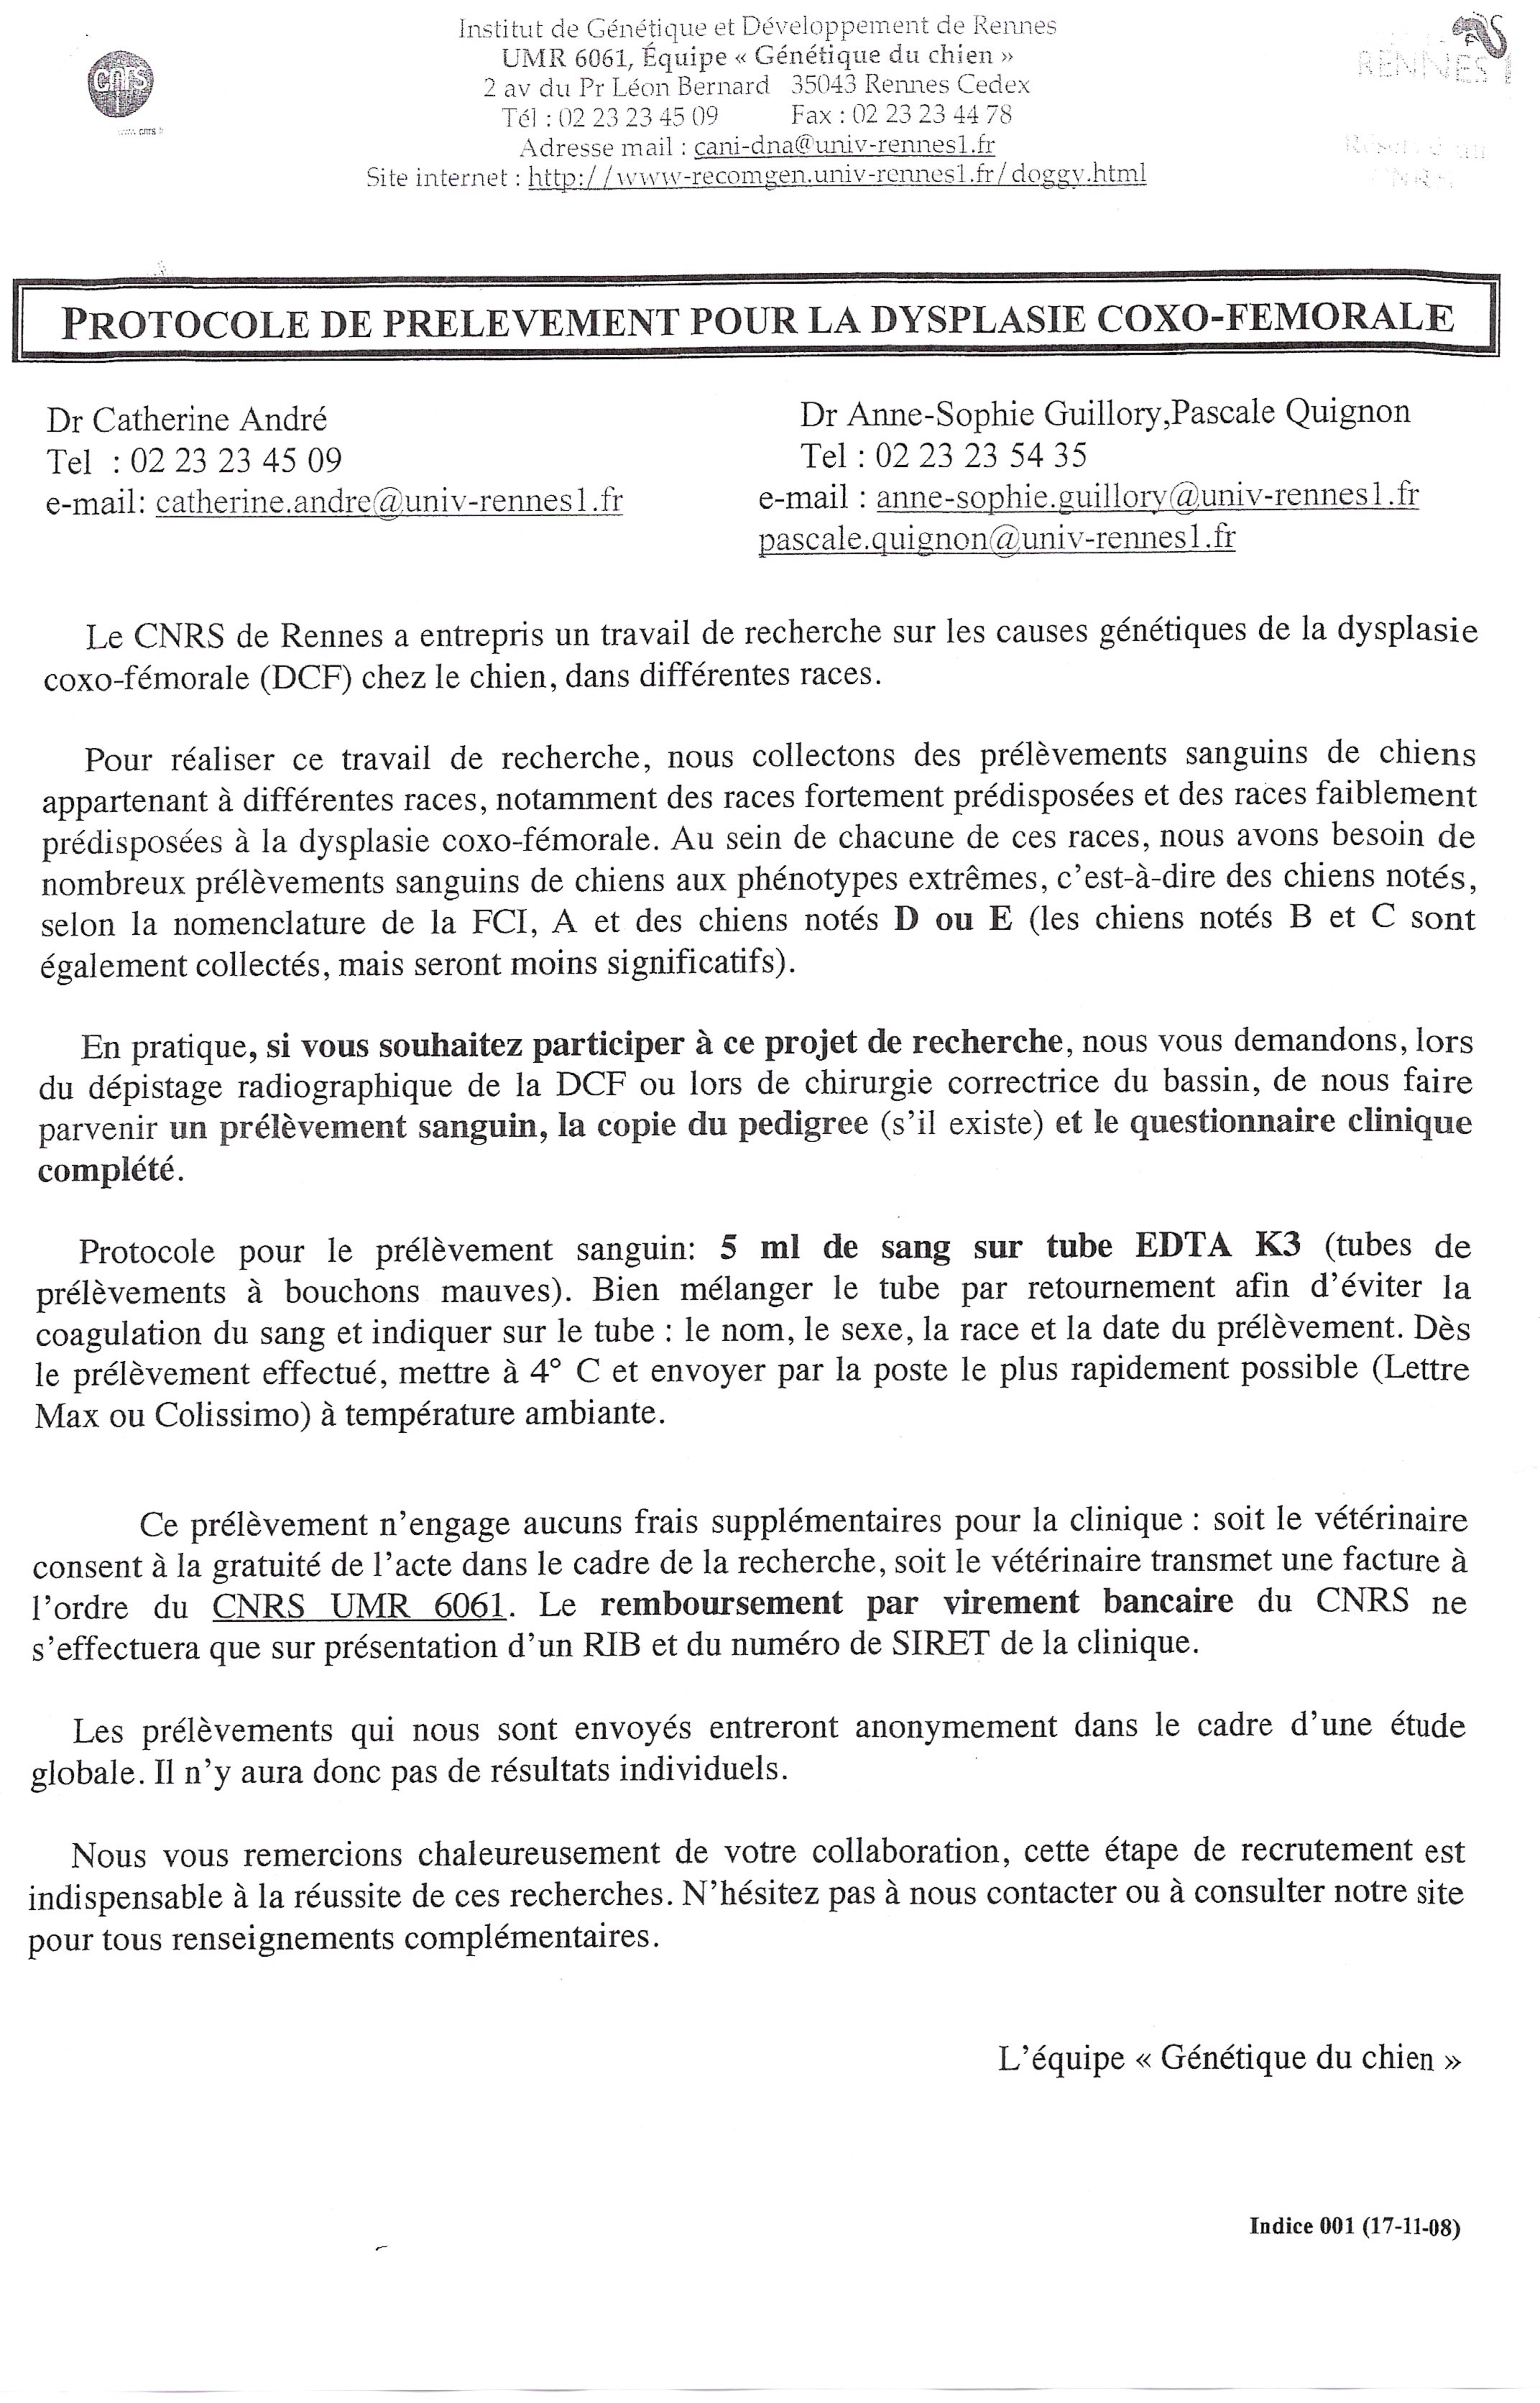 dysplasie - Recherche CNRS de Rennes : causes génétique de la dysplasie du chien - Page 2 110110022119826287448820